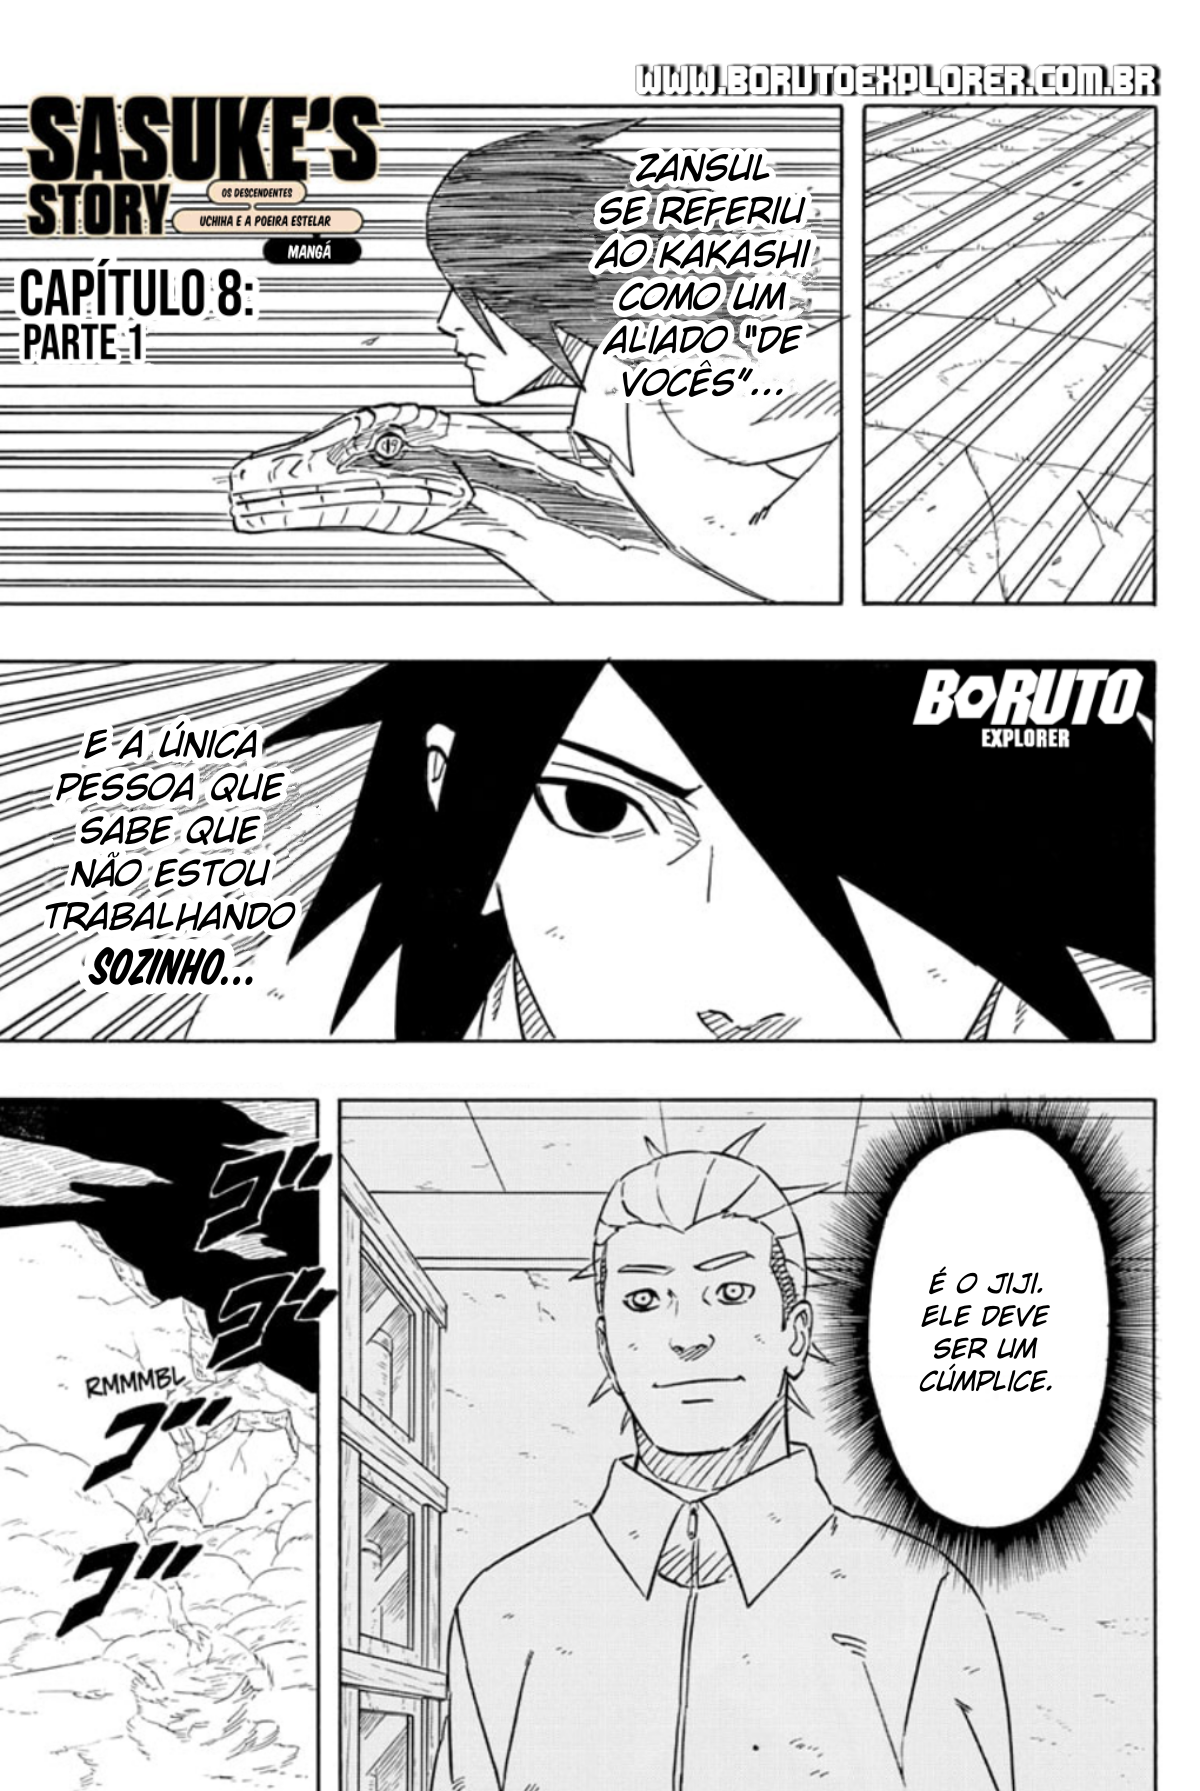 Análise do primeiro capítulo do mangá de Sasuke Retsuden